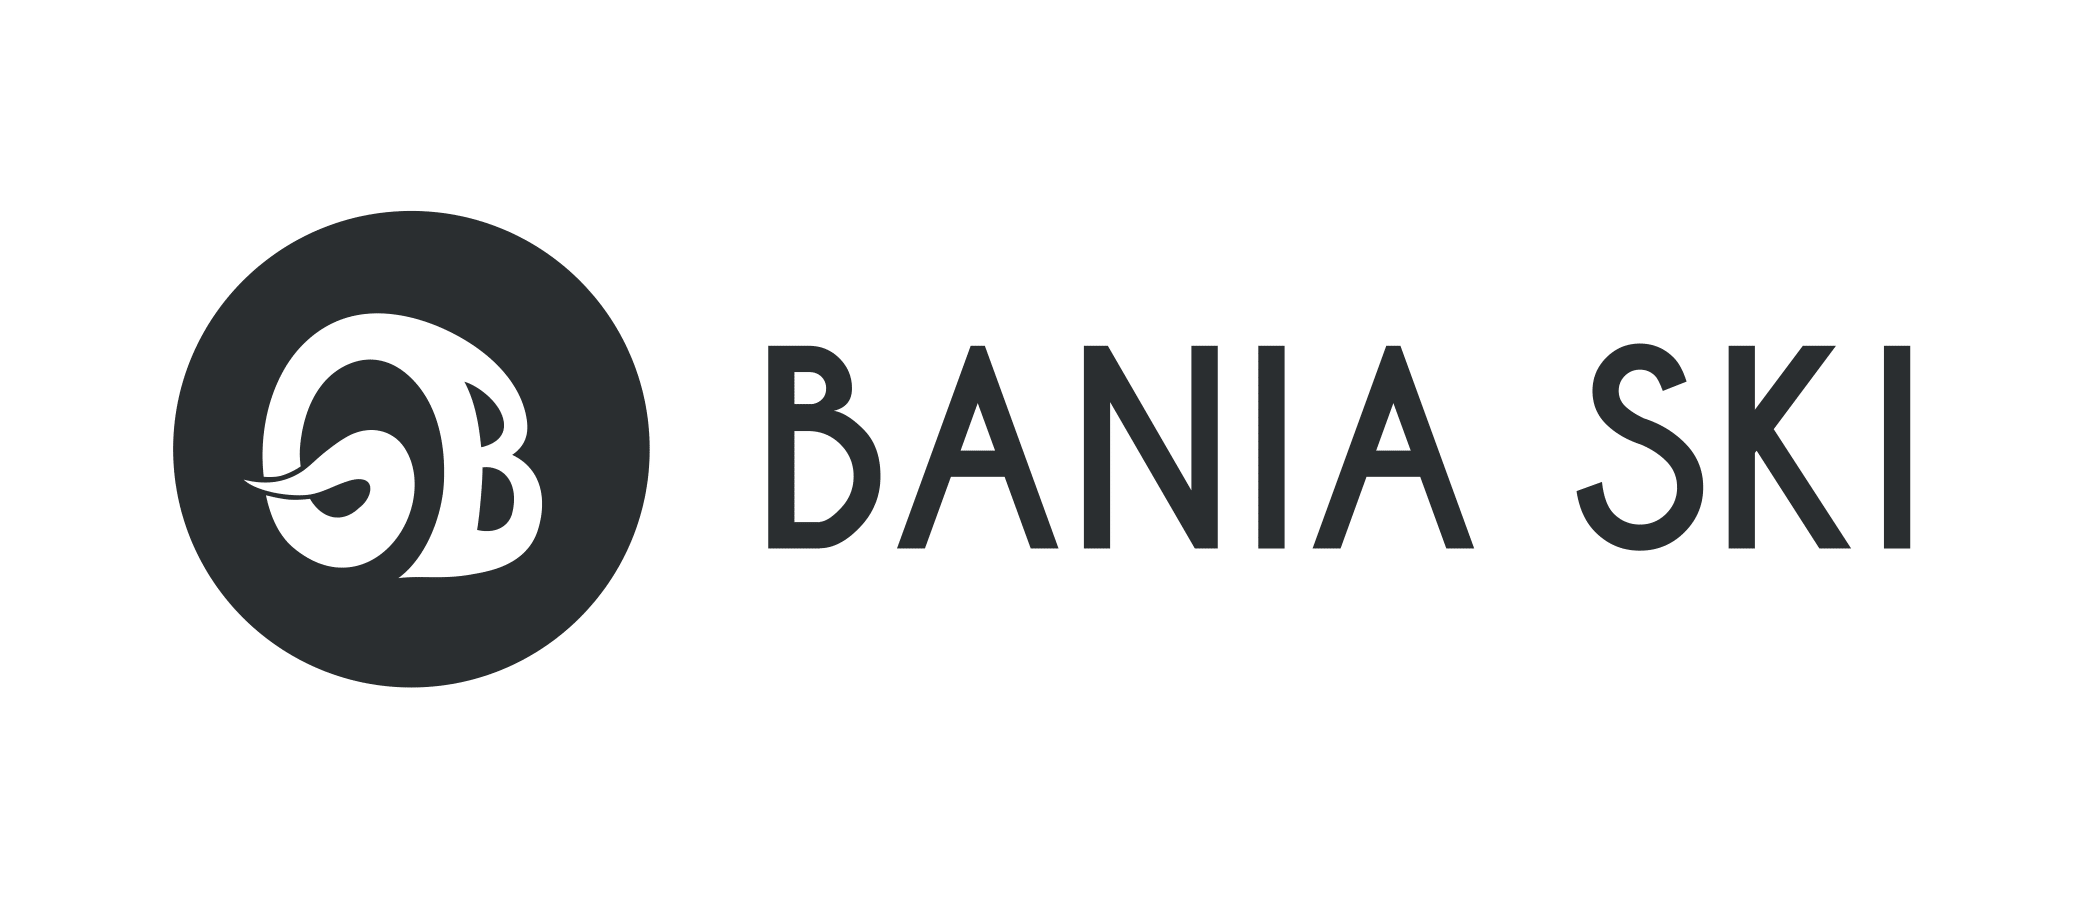 BANIA SKI logo